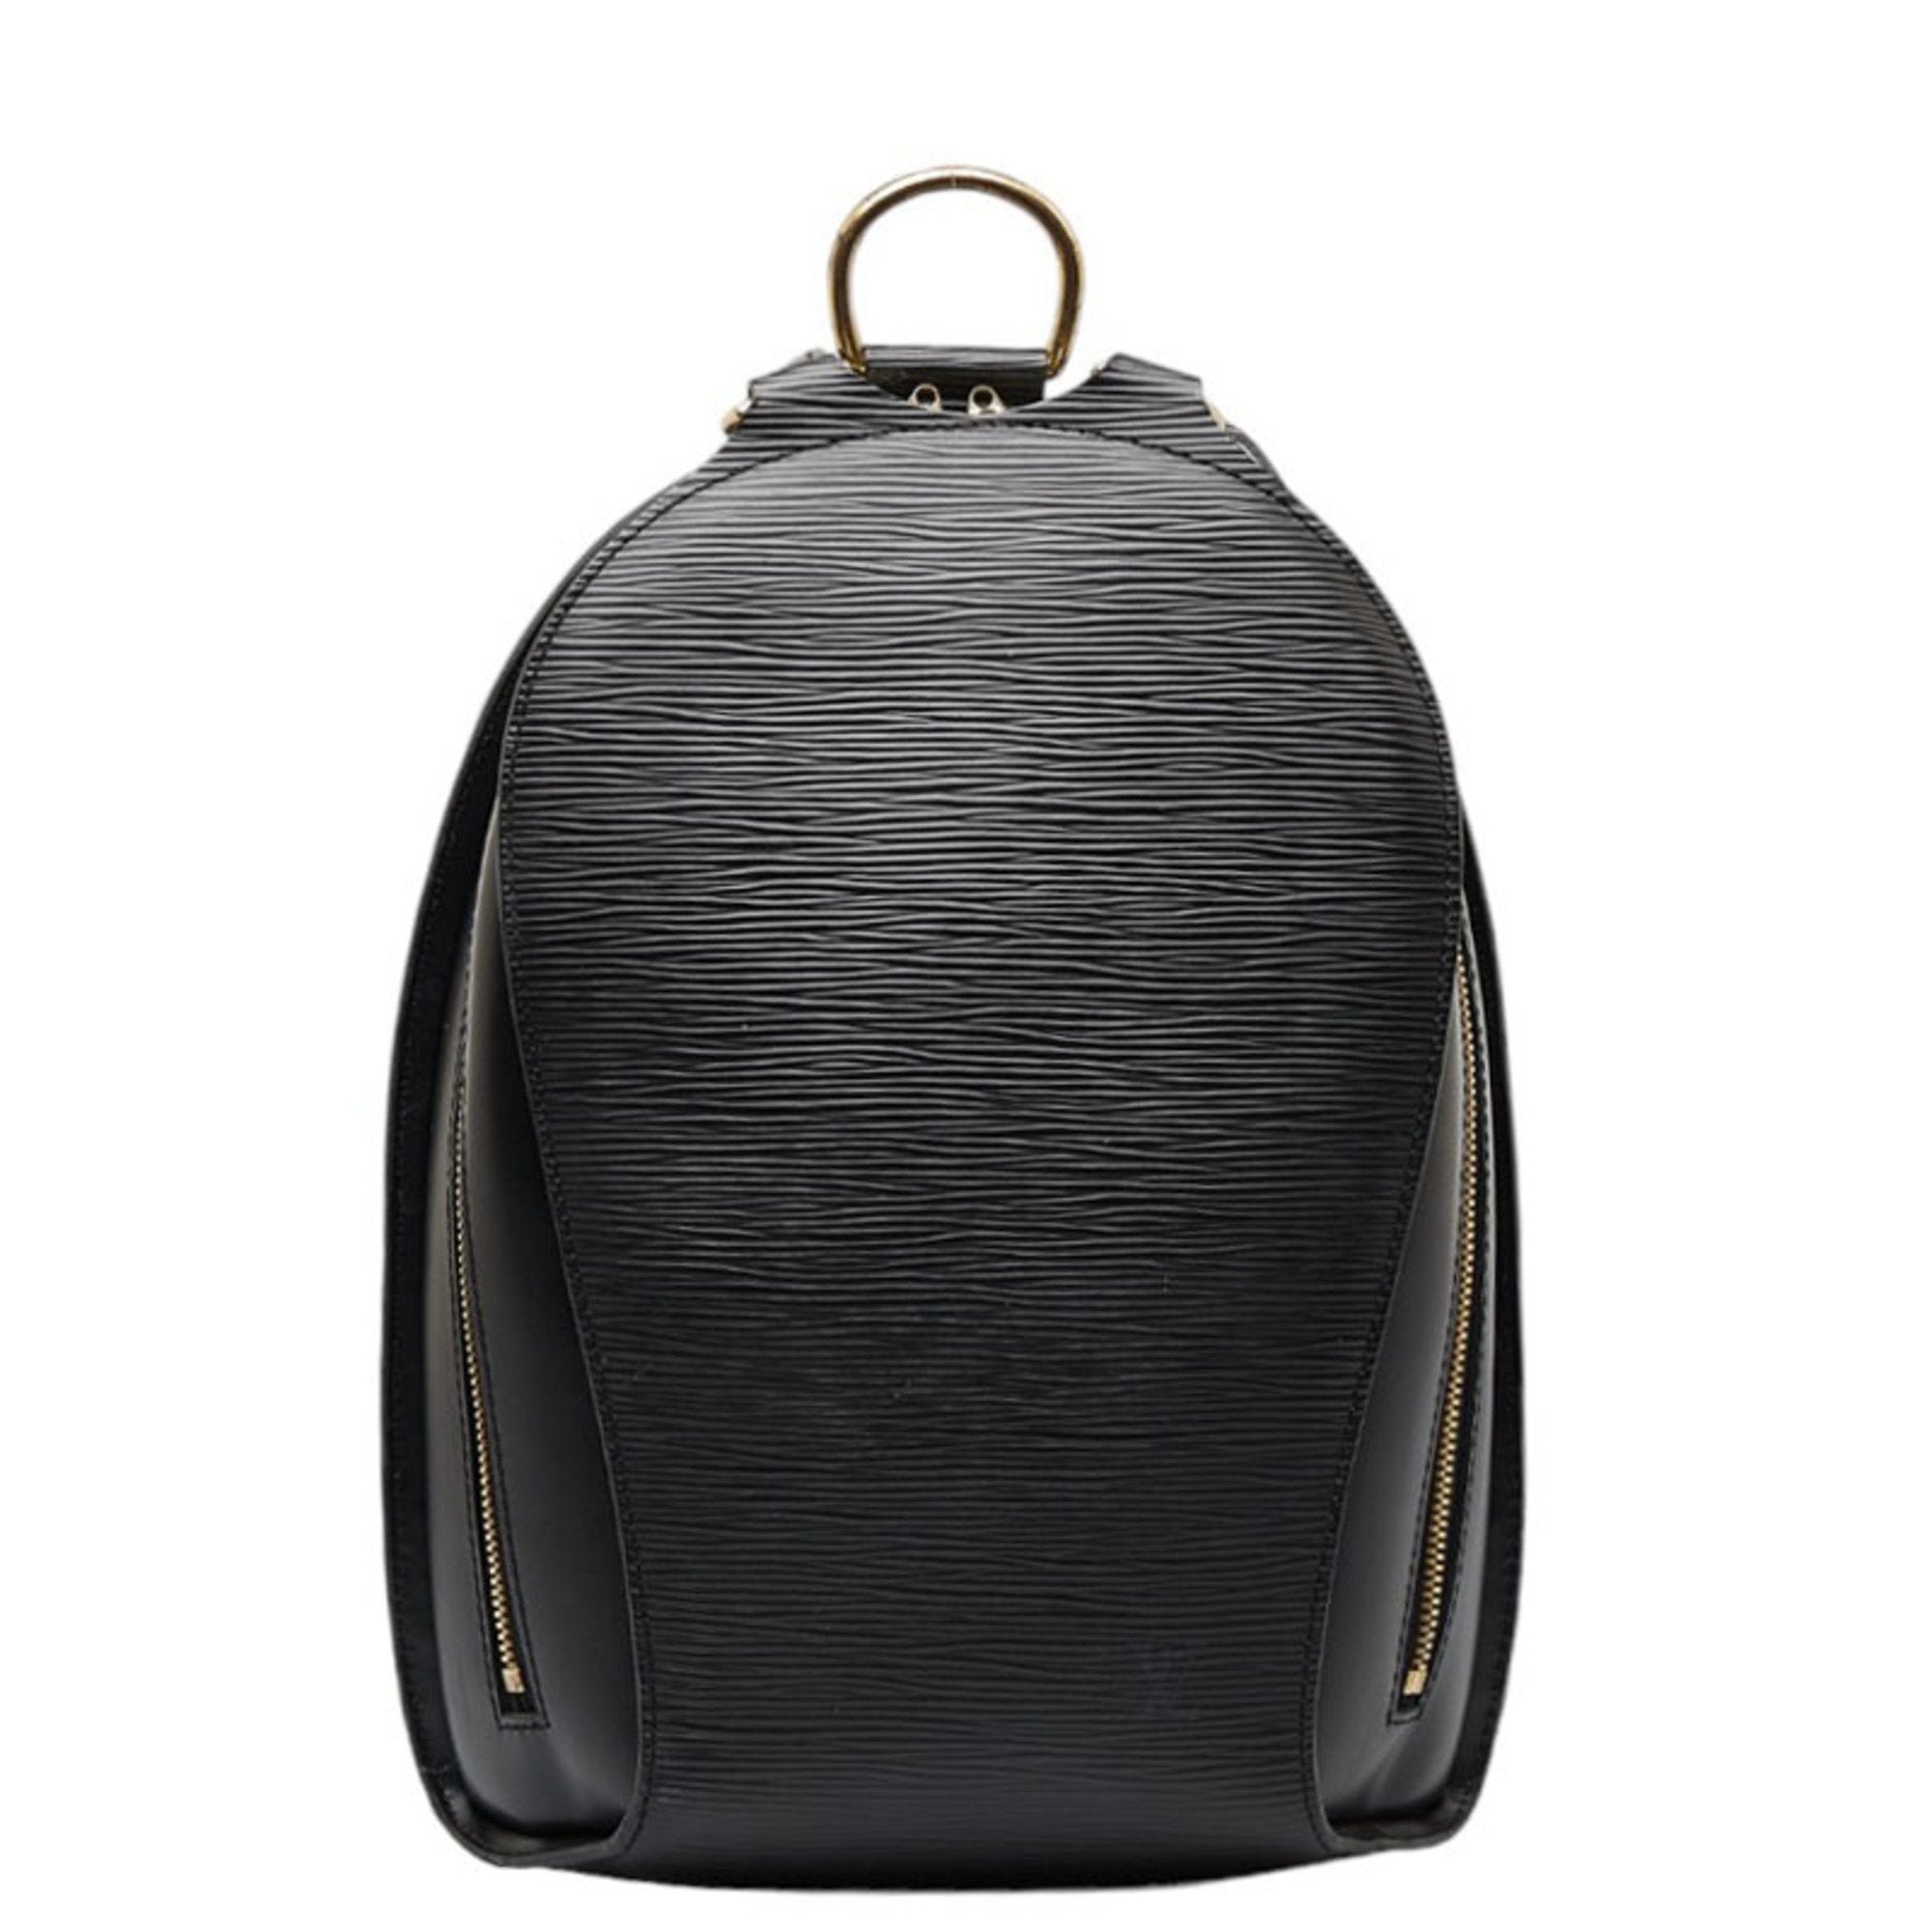 LOUIS VUITTON Epi Mabillon Backpack M52232 Noir Black Leather Ladies